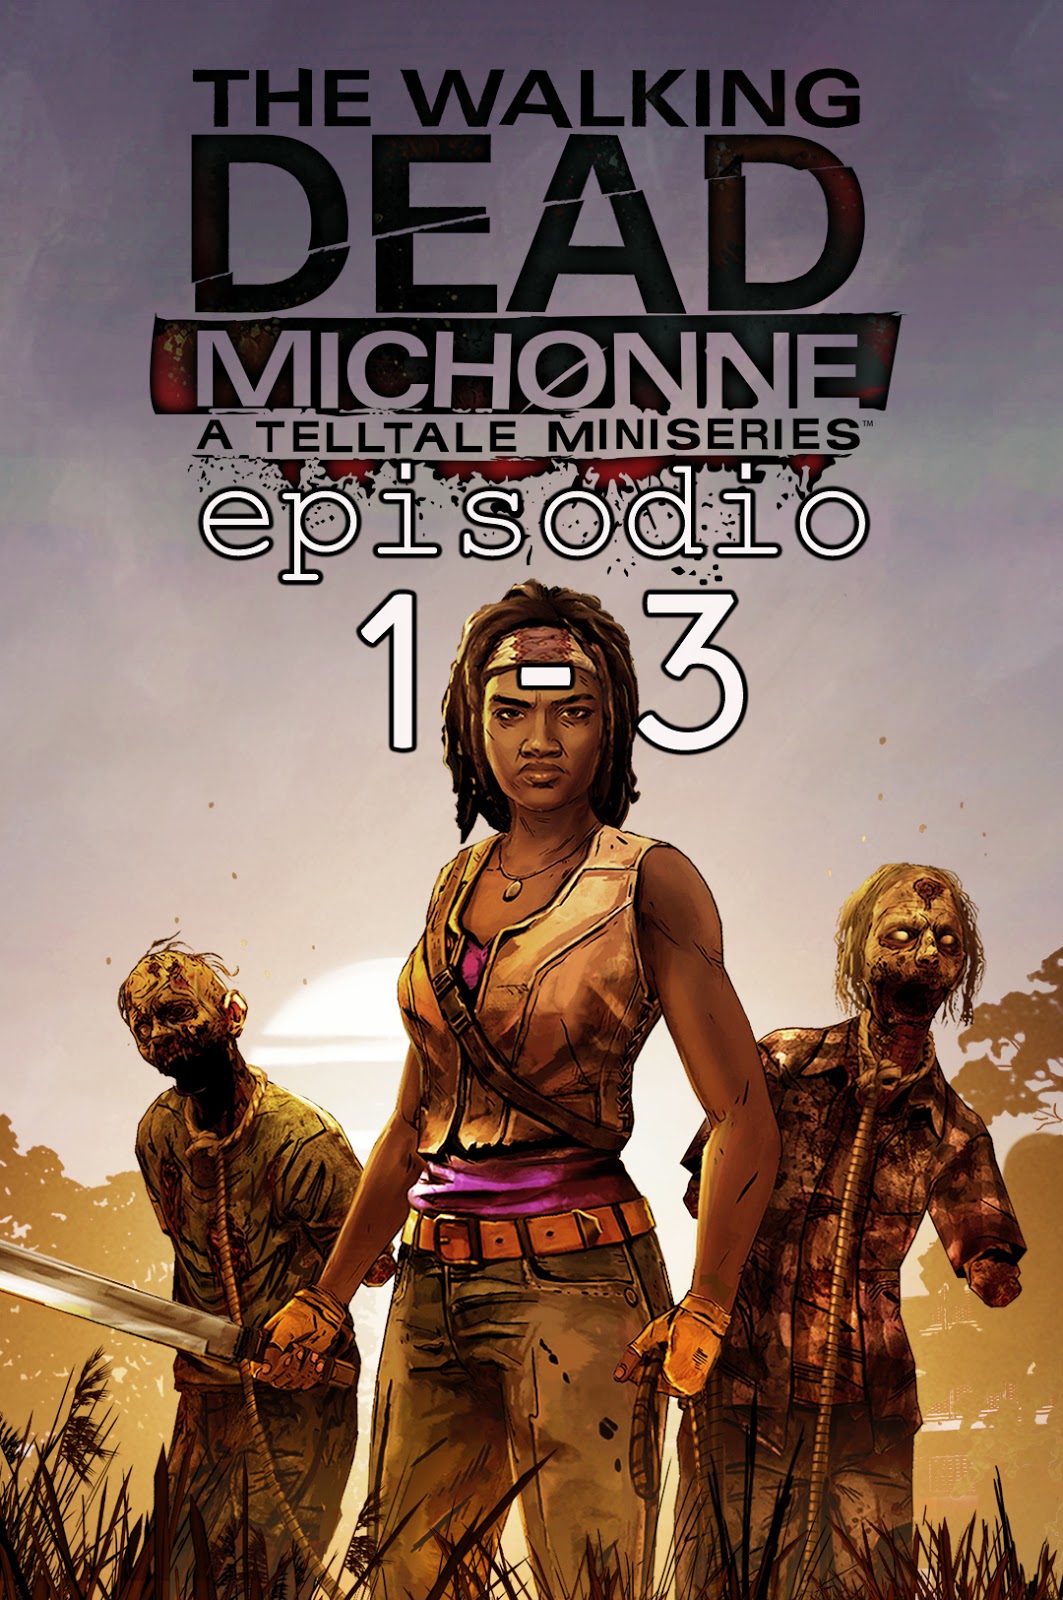 The Walking Dead: Michonne - Episode 1-3 + Update V1.3 [PSN/PS3] [3.55+] [MEGA]